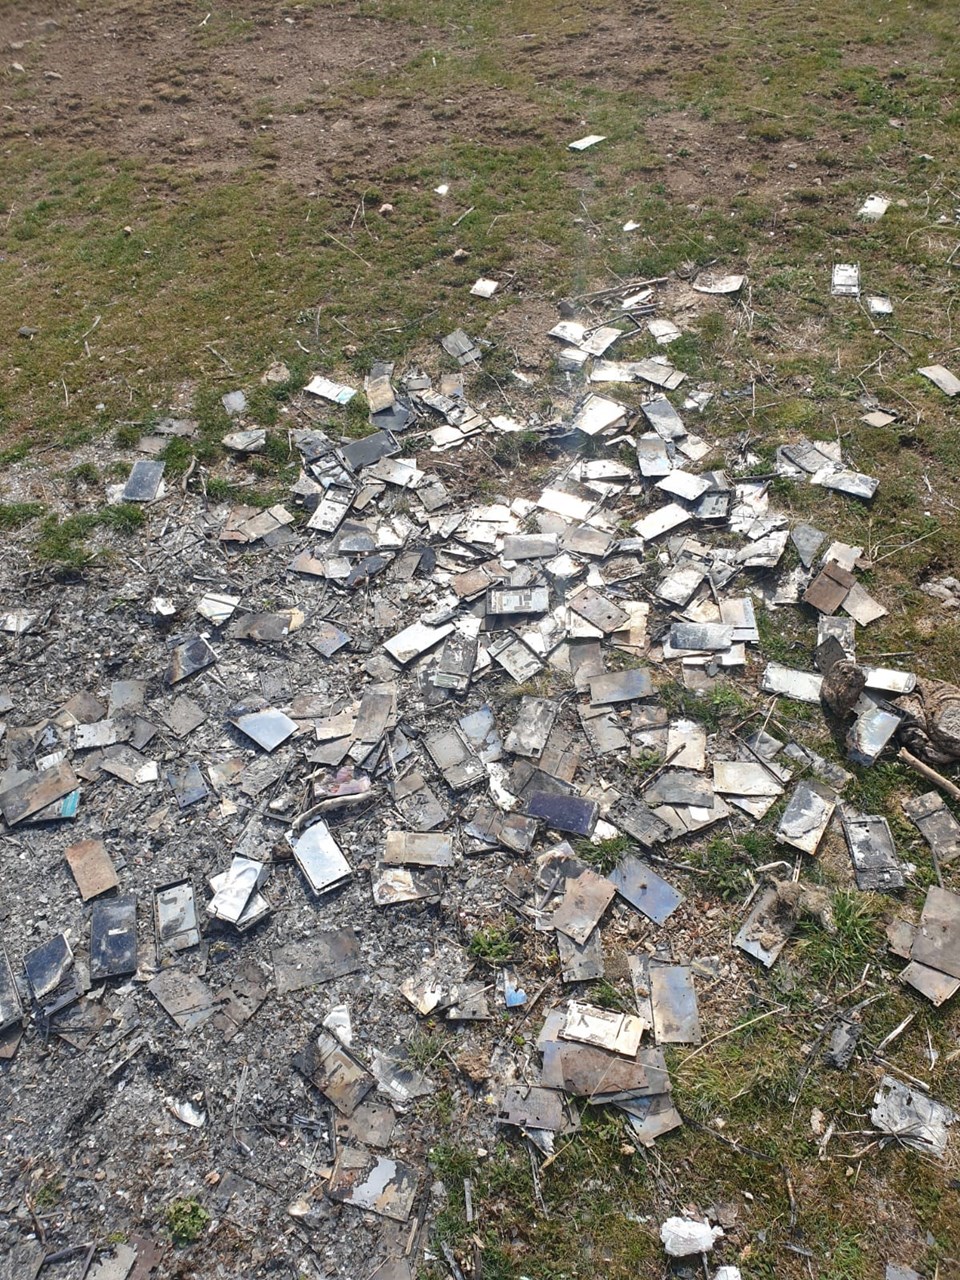 Kayseri'de yakılmış bin adet cep telefonu bulundu - 1